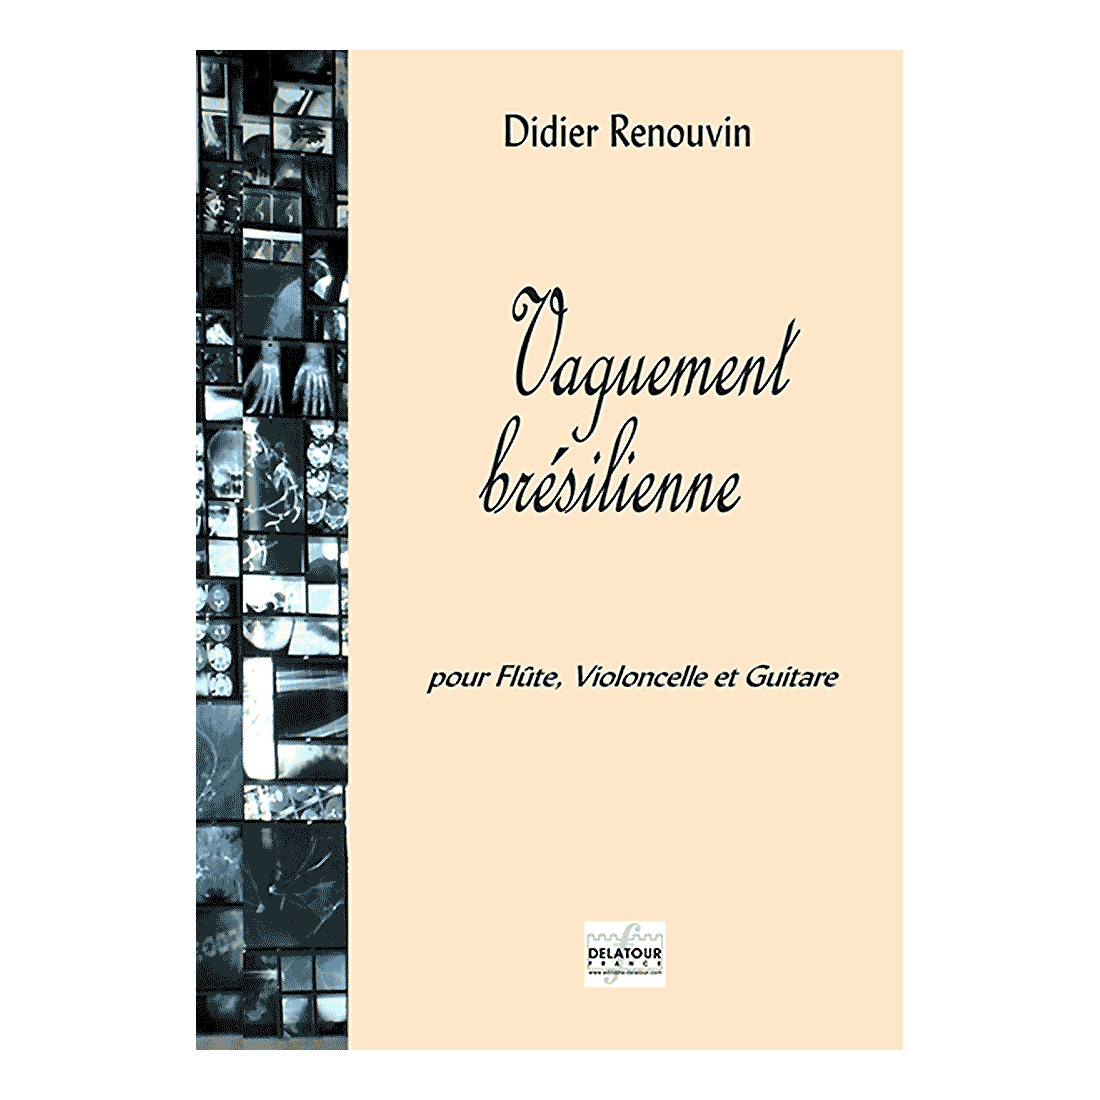 Vaguement brésilienne for flute, cello and guitar